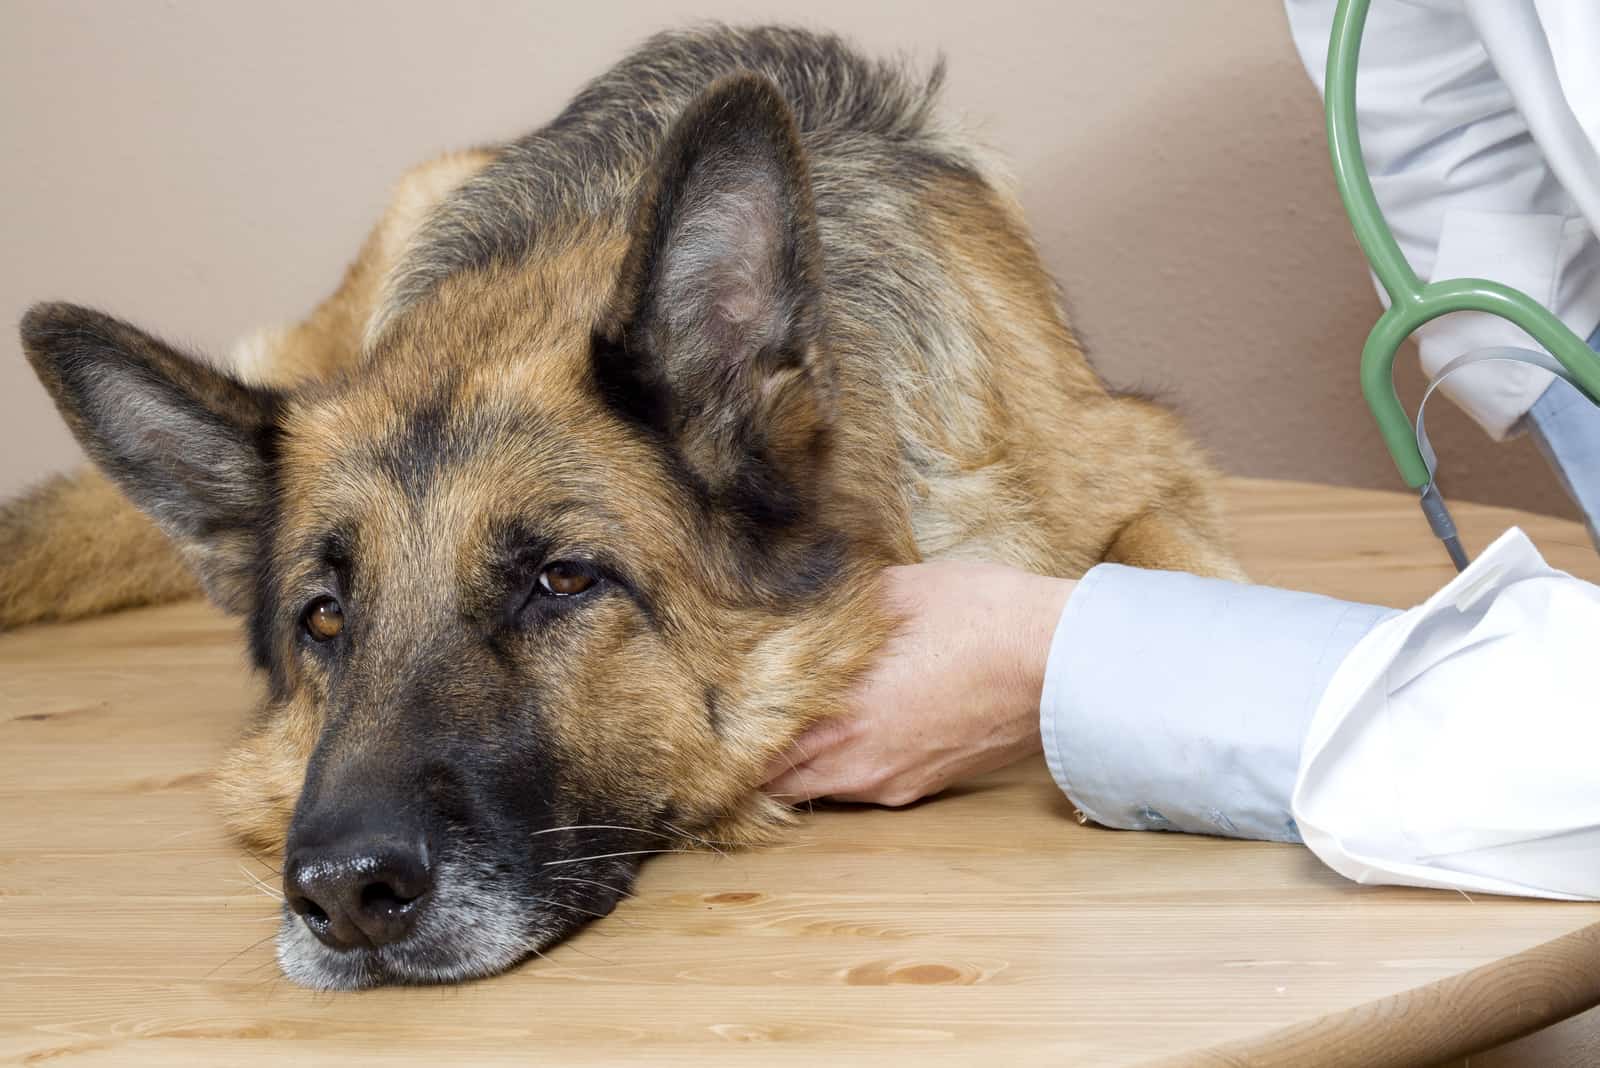 Tierarzt untersucht einen kranken Deutschen Schäferhund